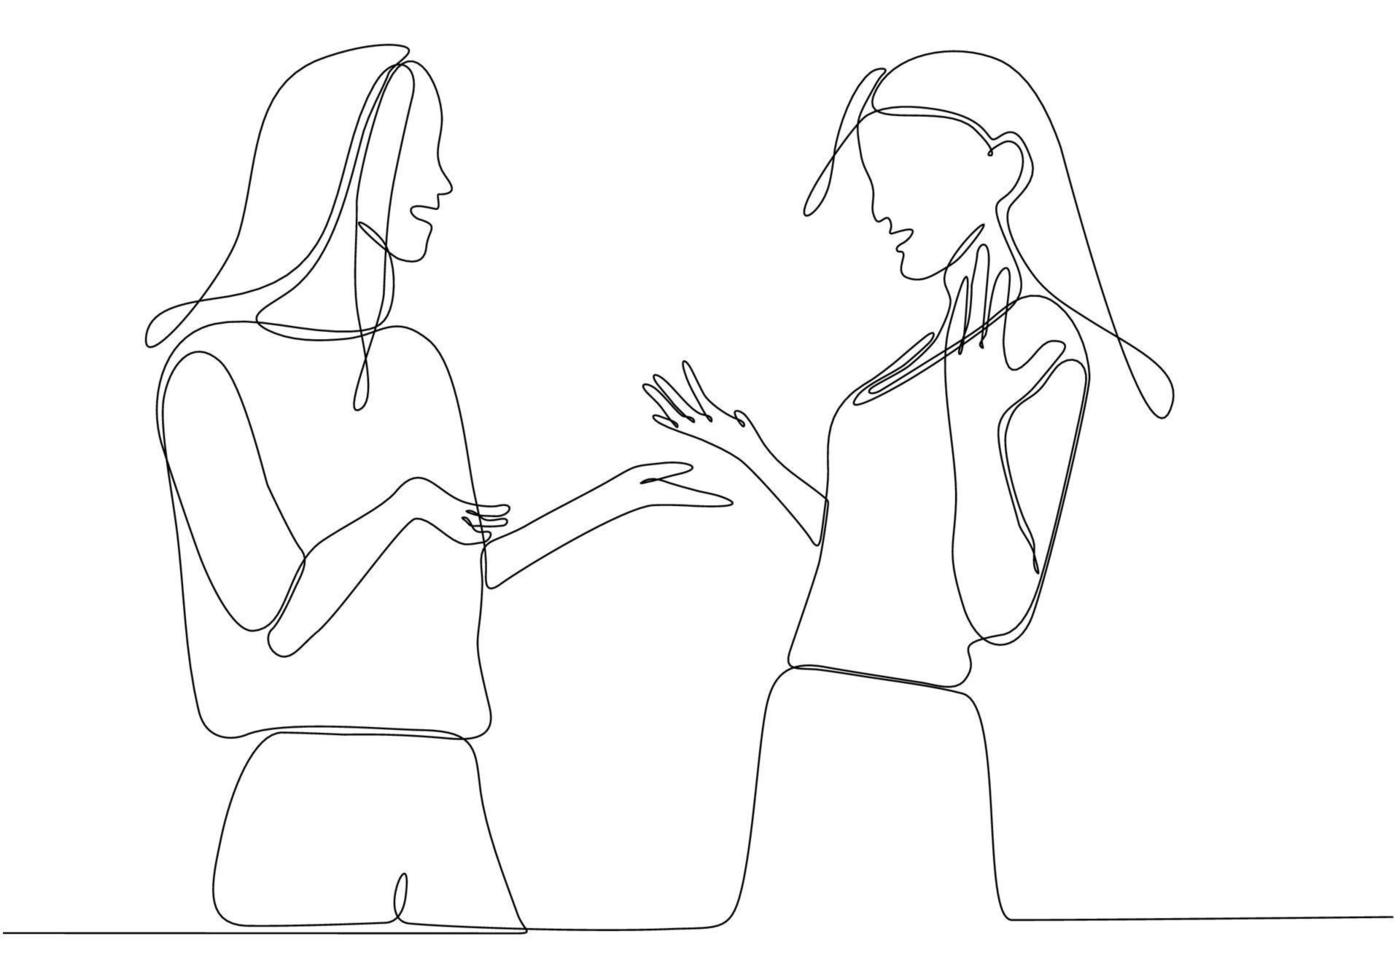 enkel kontinuerlig linje bild av två unga kvinnliga arbetare som chattar avslappnat under kontorsuppehåll. ha småprat på jobbet en rad konceptritning grafisk design vektorillustration vektor